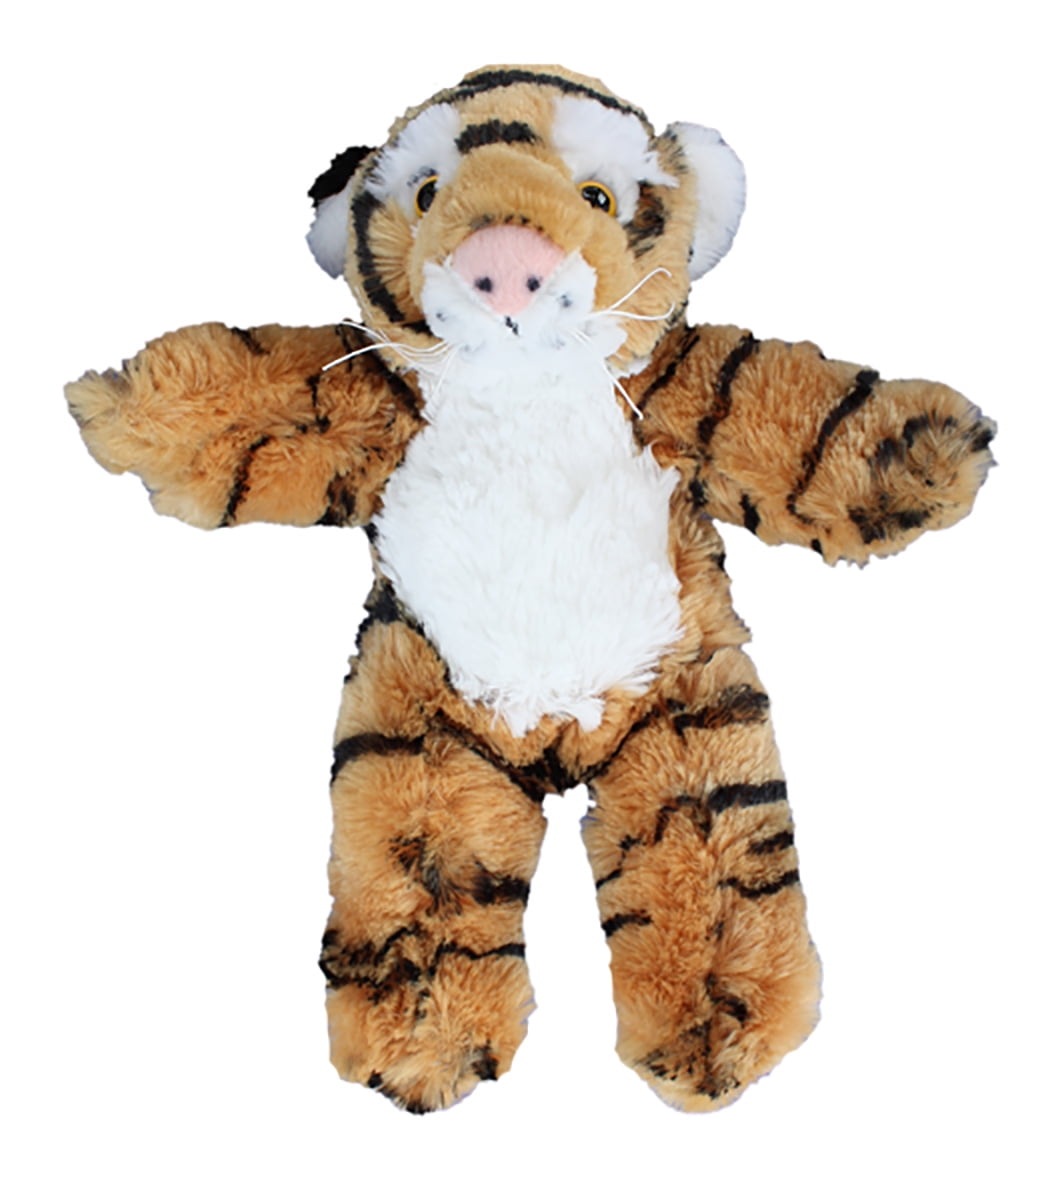 Cuddly Soft 8 inch Stuffed Leopard...We stuff 'em...you love 'em! Teddy Mounta 